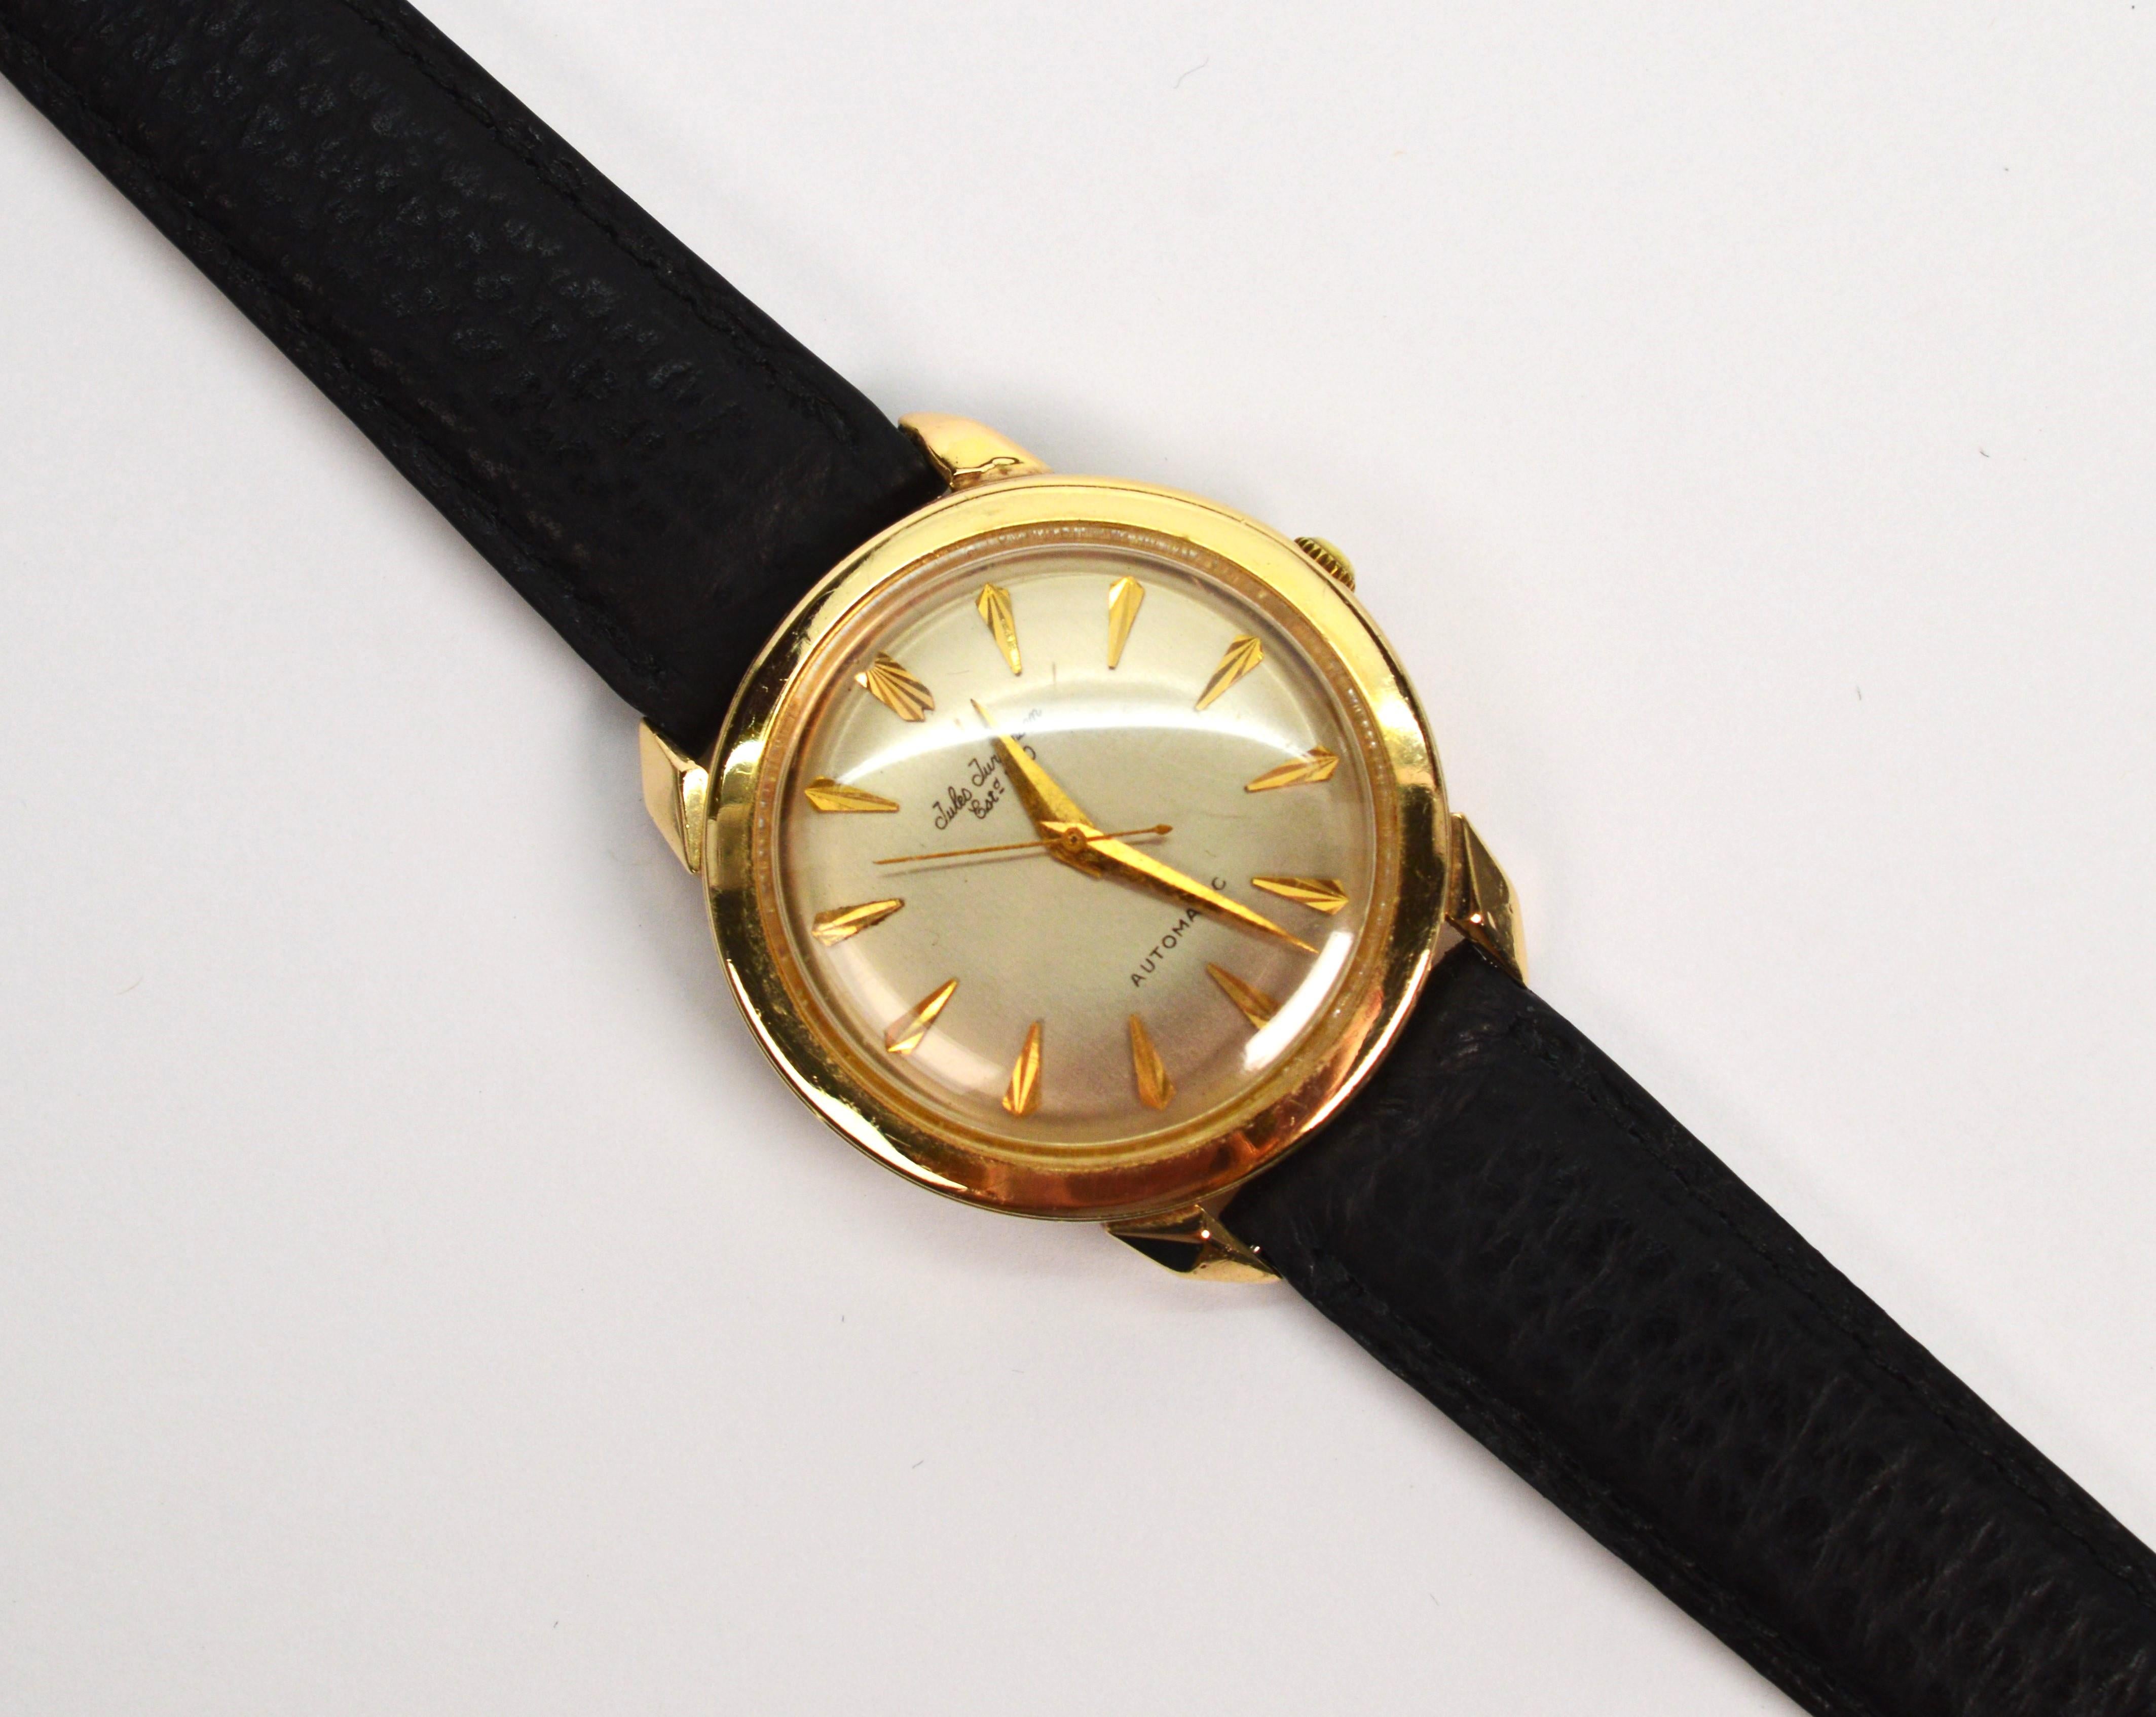 La quintessence du style des années 1950 de la célèbre société horlogère suisse Jules Jurgensen. Cette beauté rétro de 34 mm en or jaune 14 carats est dotée d'un mouvement automatique à 17 rubis, numéro de série 300354. Le numéro du boîtier rond est